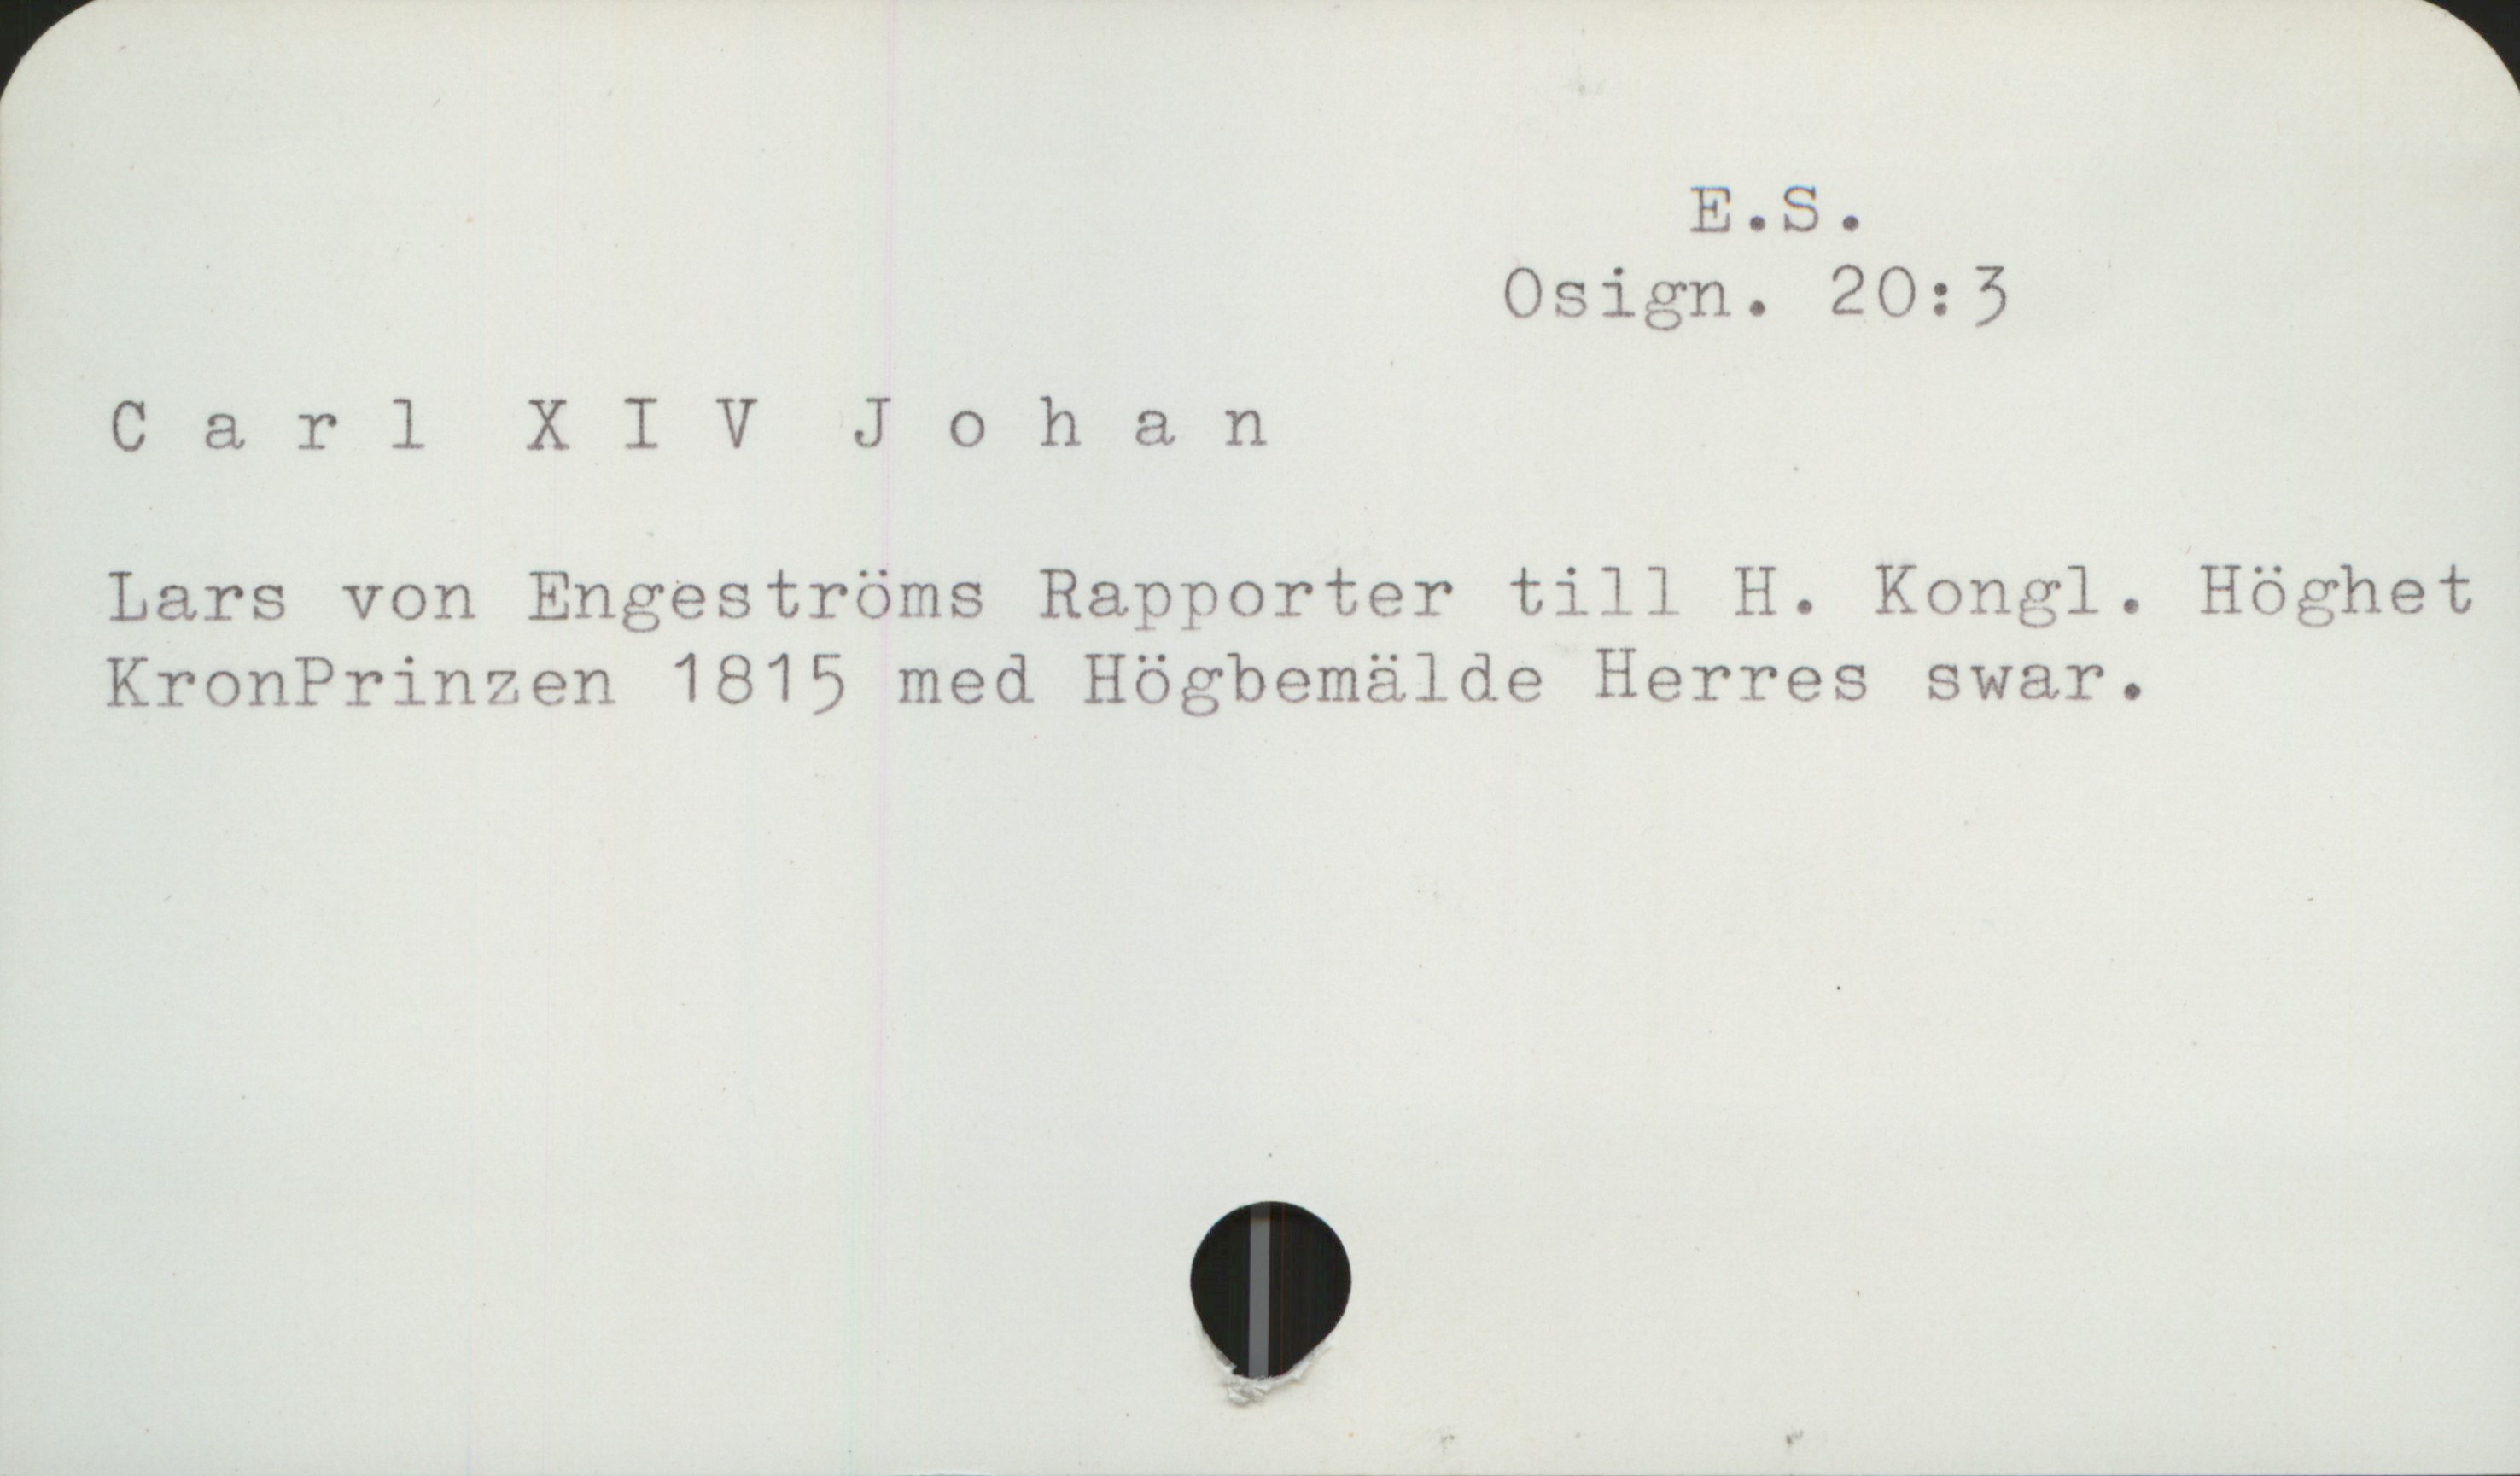  EOS.
Osign. 20; 3
Carl X I V Johan
Lars von Engeströms Rapporter till H. Kongl. Höghet
KronPrinzen 1815 med Högbemälde Herres svar.

